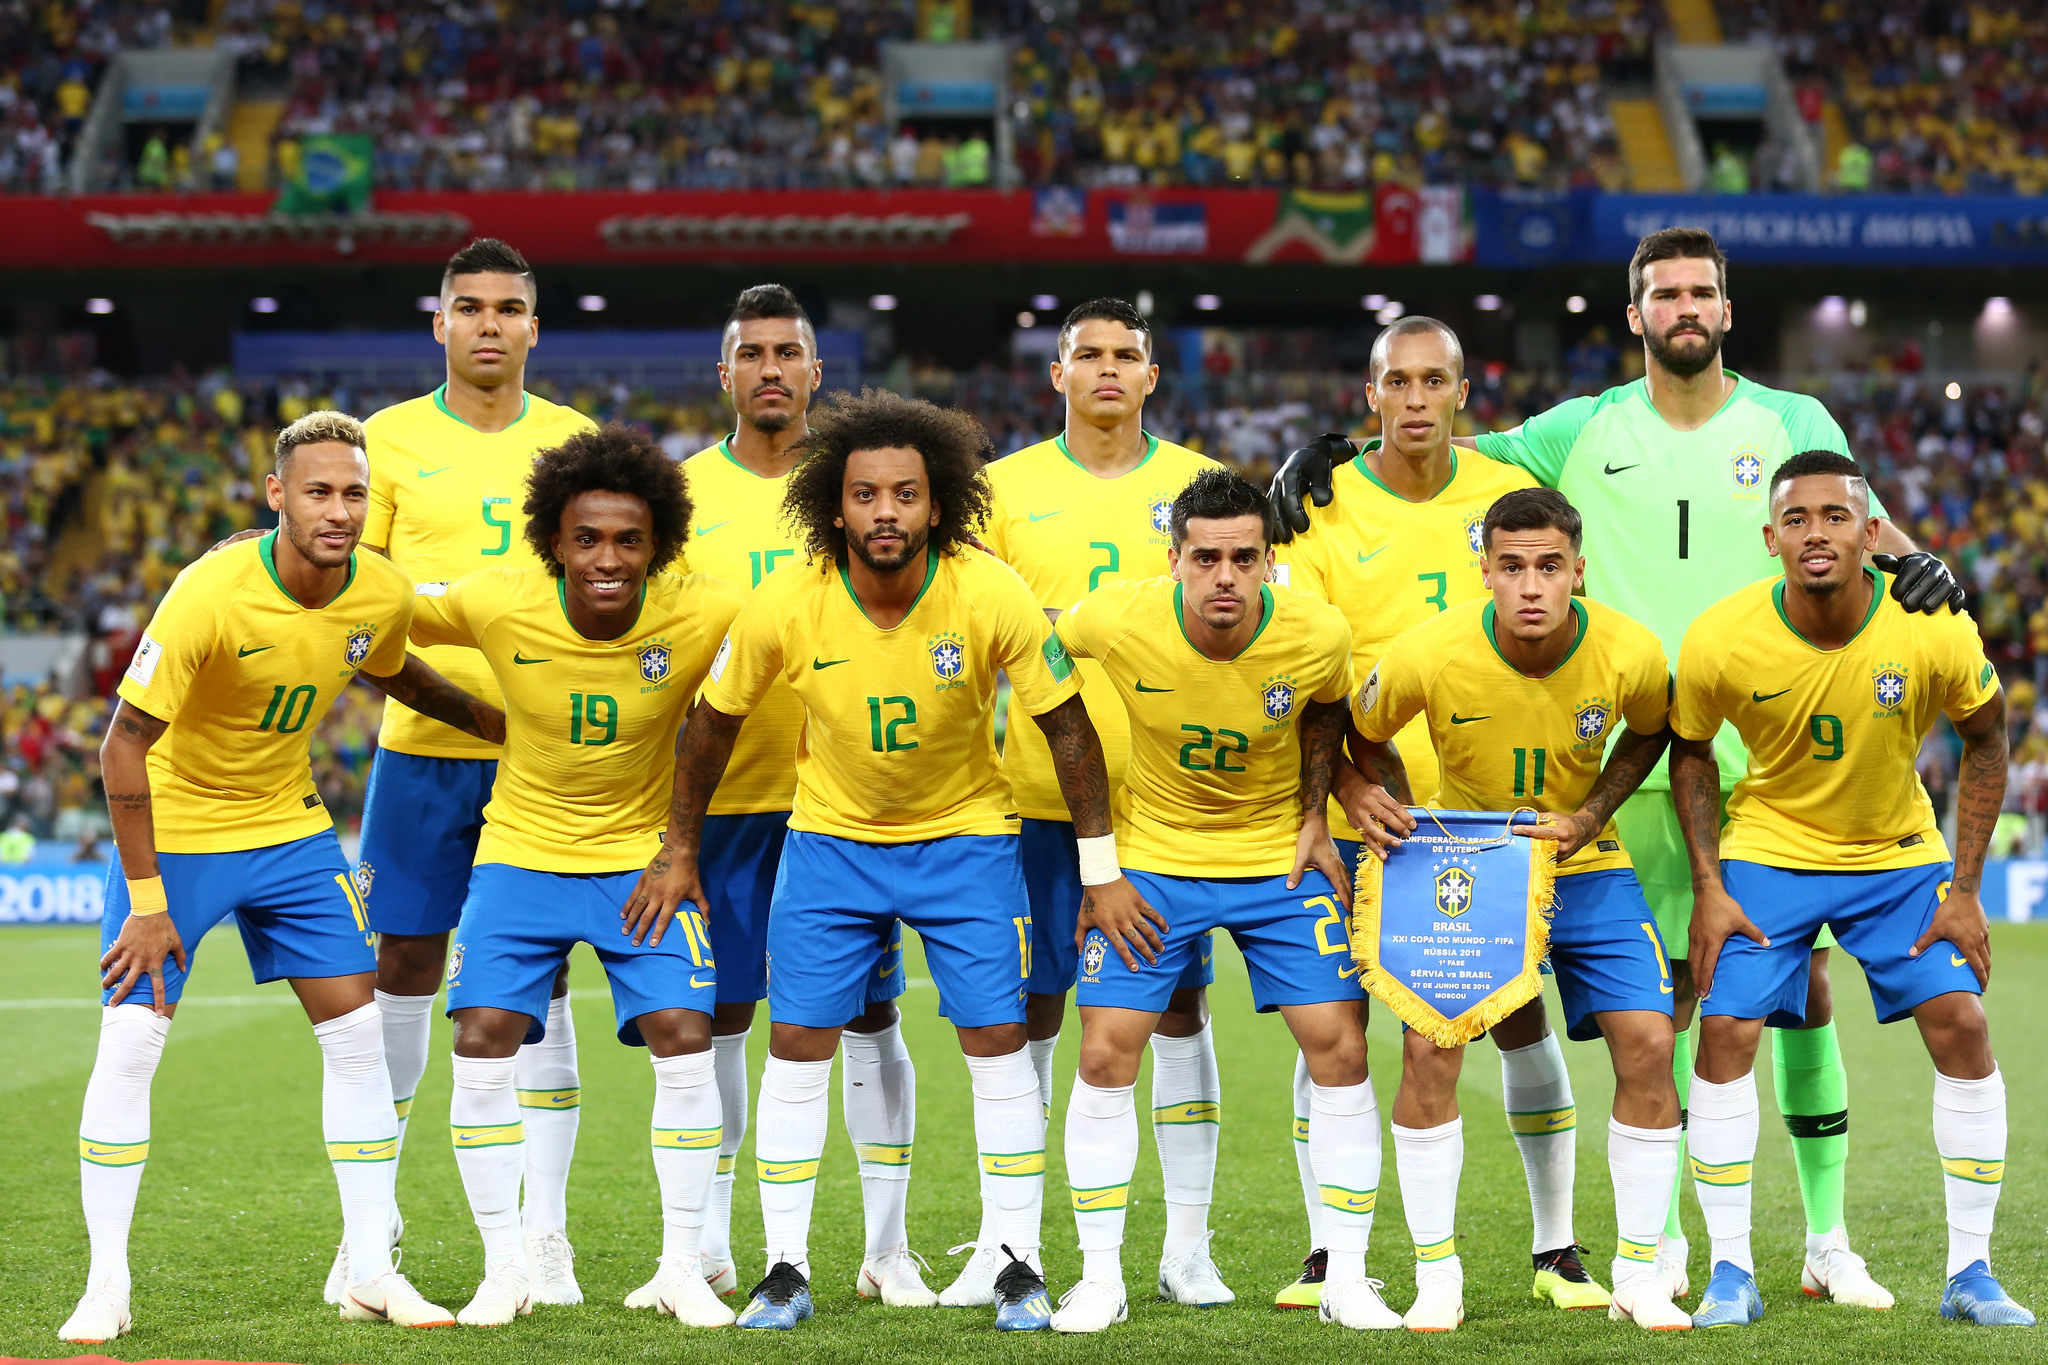 Copa do Mundo 2018 - SoccerBlog